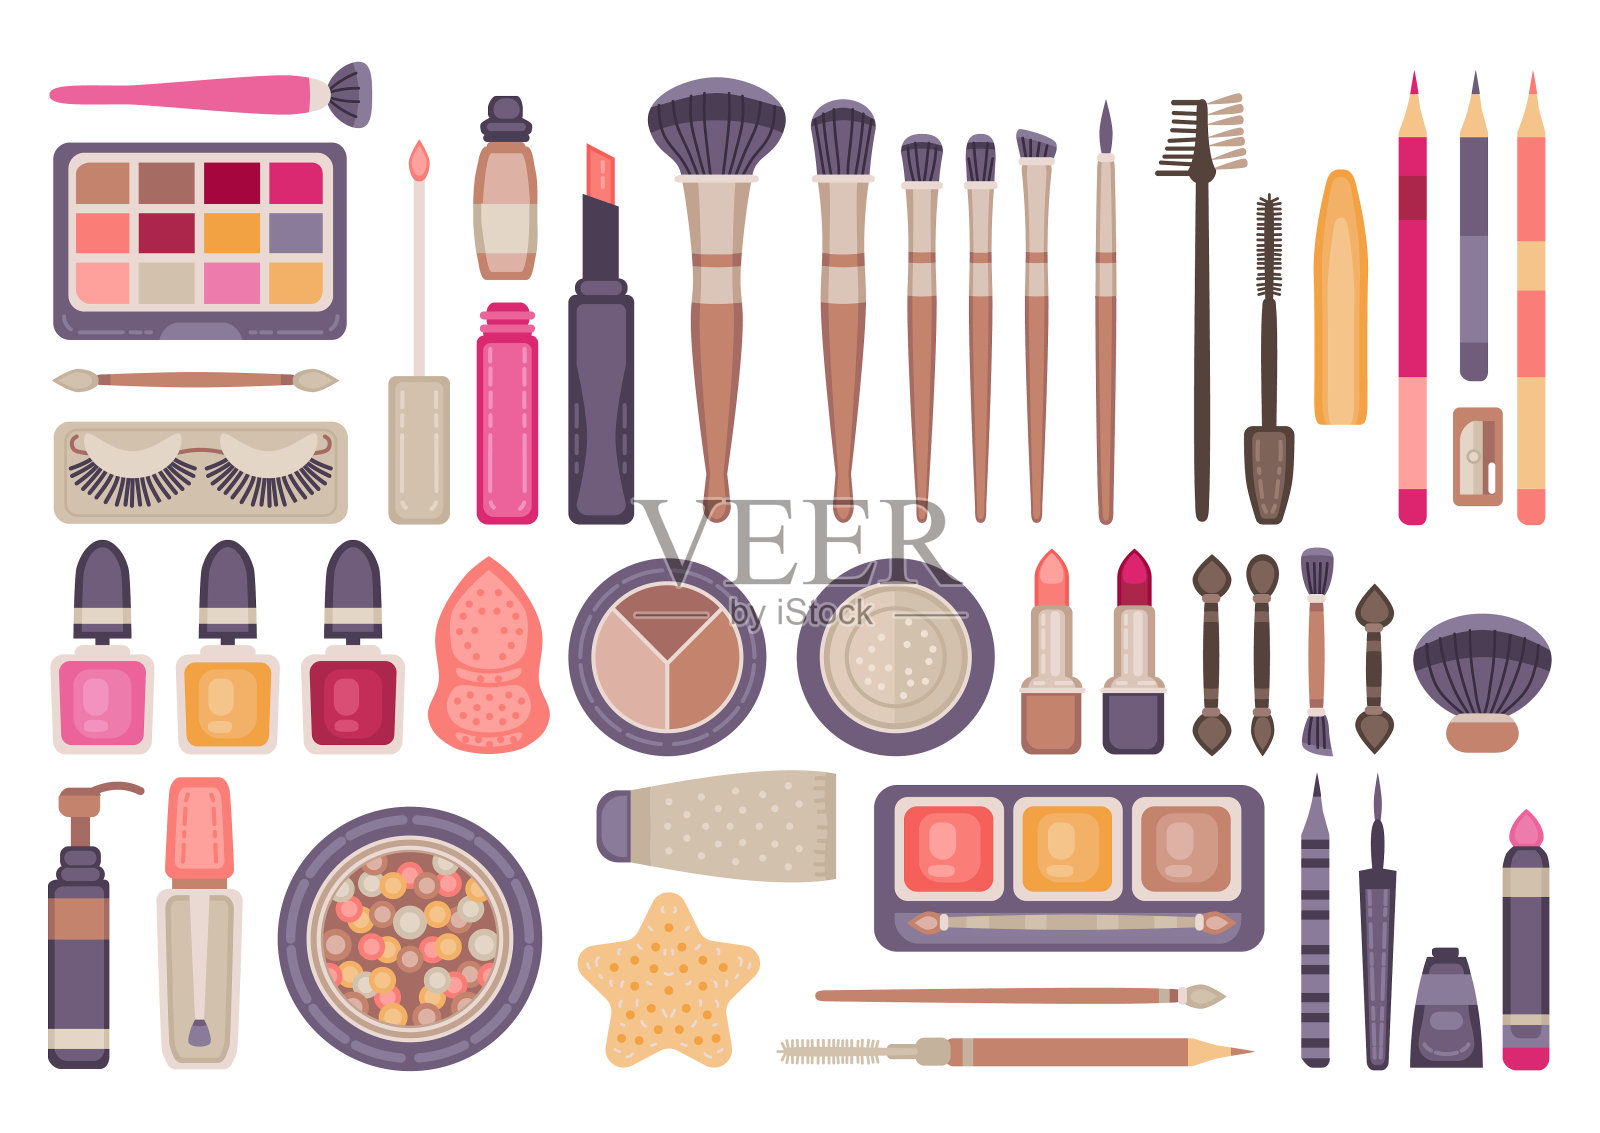 脸部化妆工具组。装饰性化妆品插画图片素材